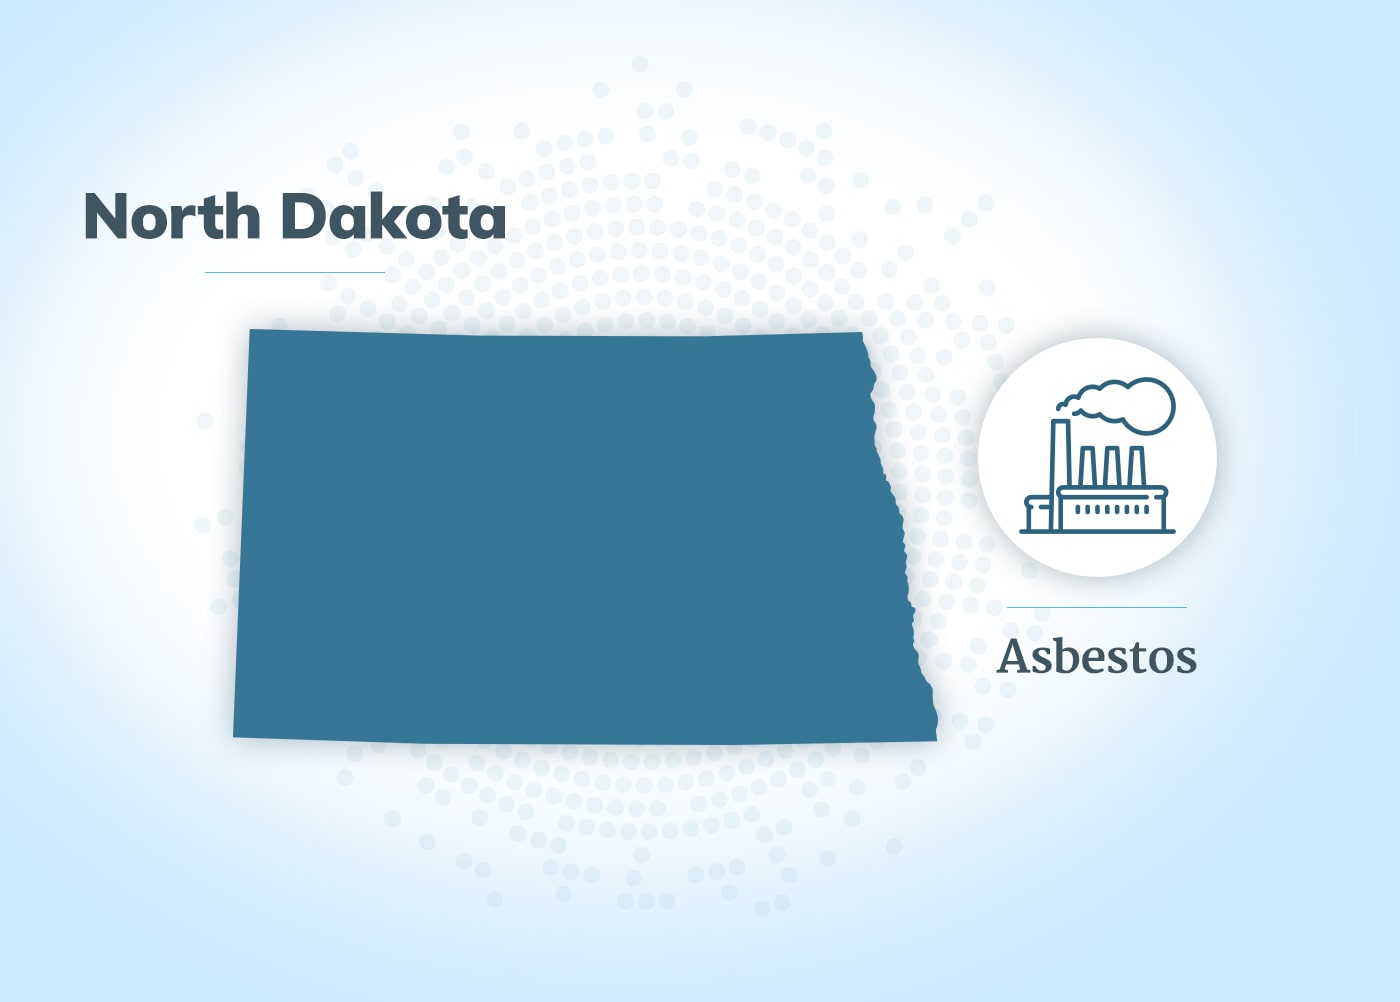 Asbestos exposure in North Dakota